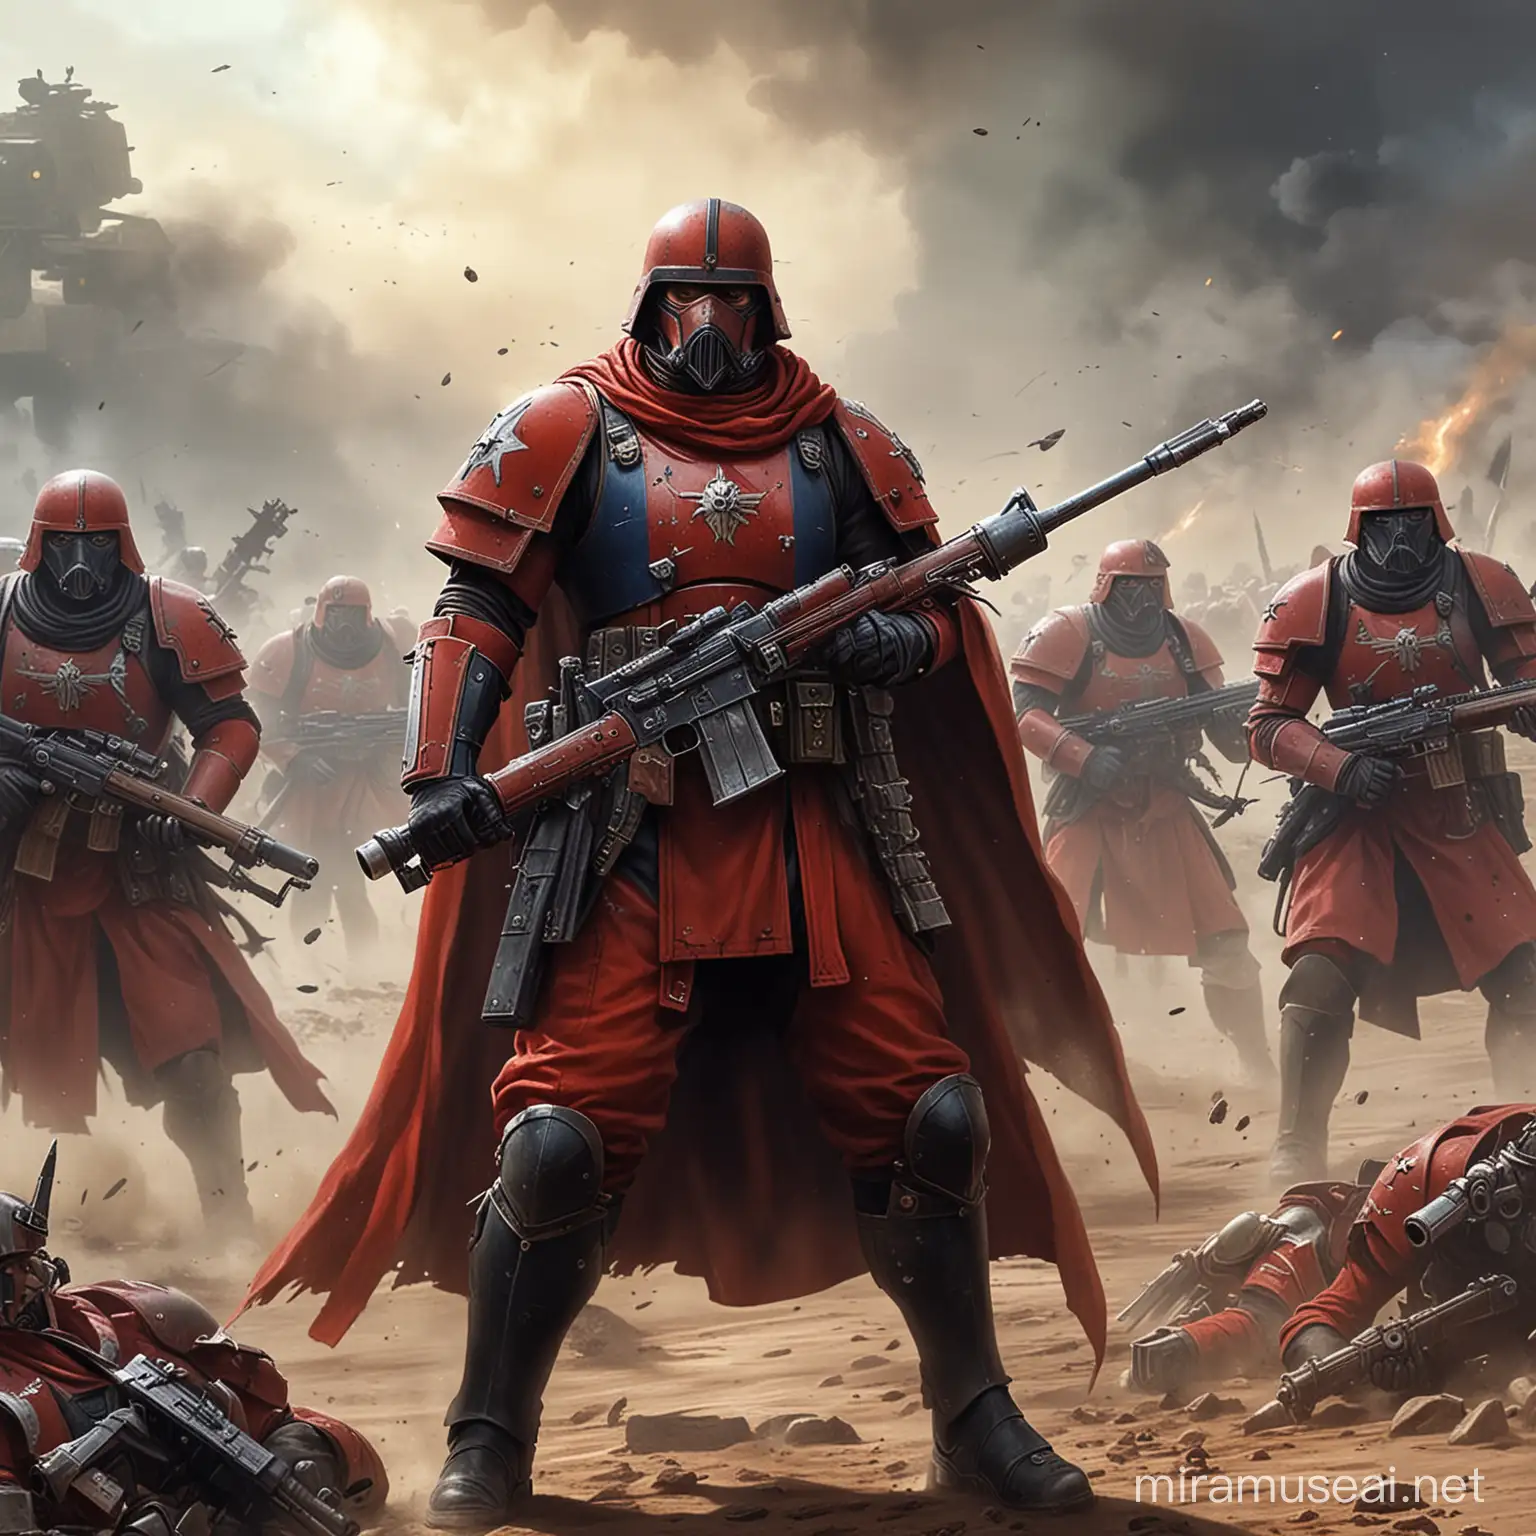 Imperial Guard Battle Scene in Warhammer 40K